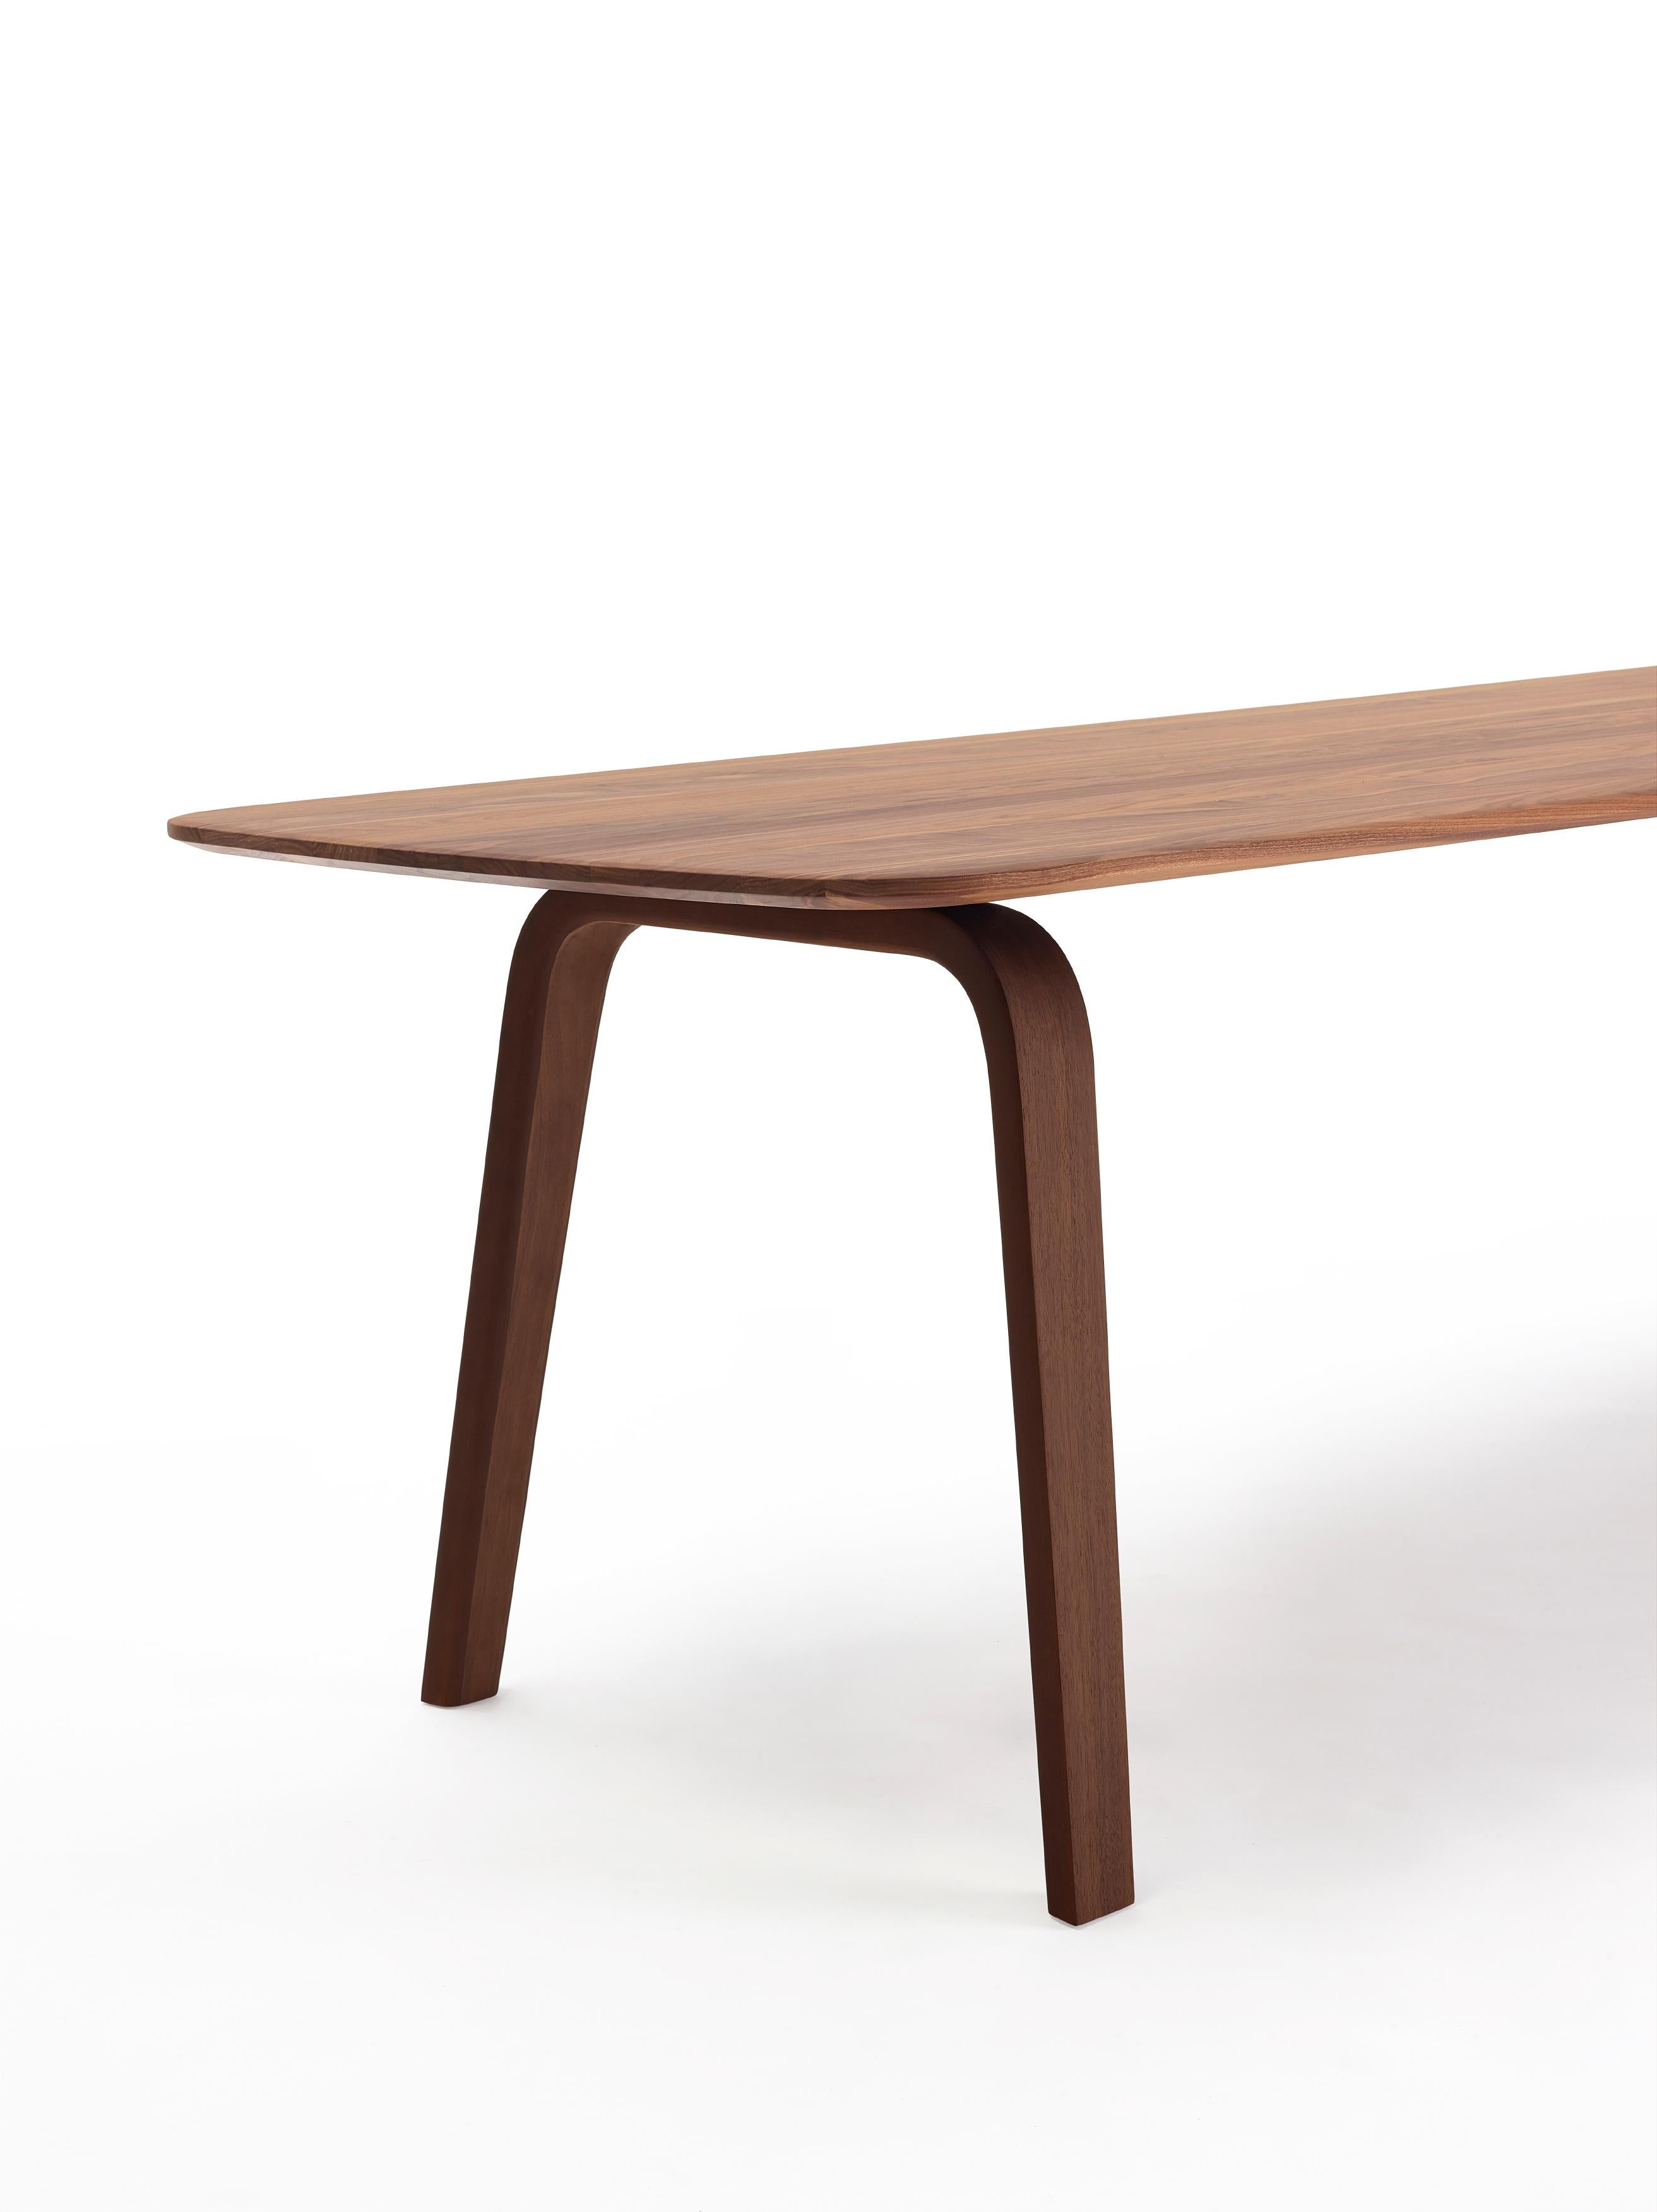 Dutch Customizable Arco Essential Wood Walnut Table by Gudmundur Ludvik For Sale